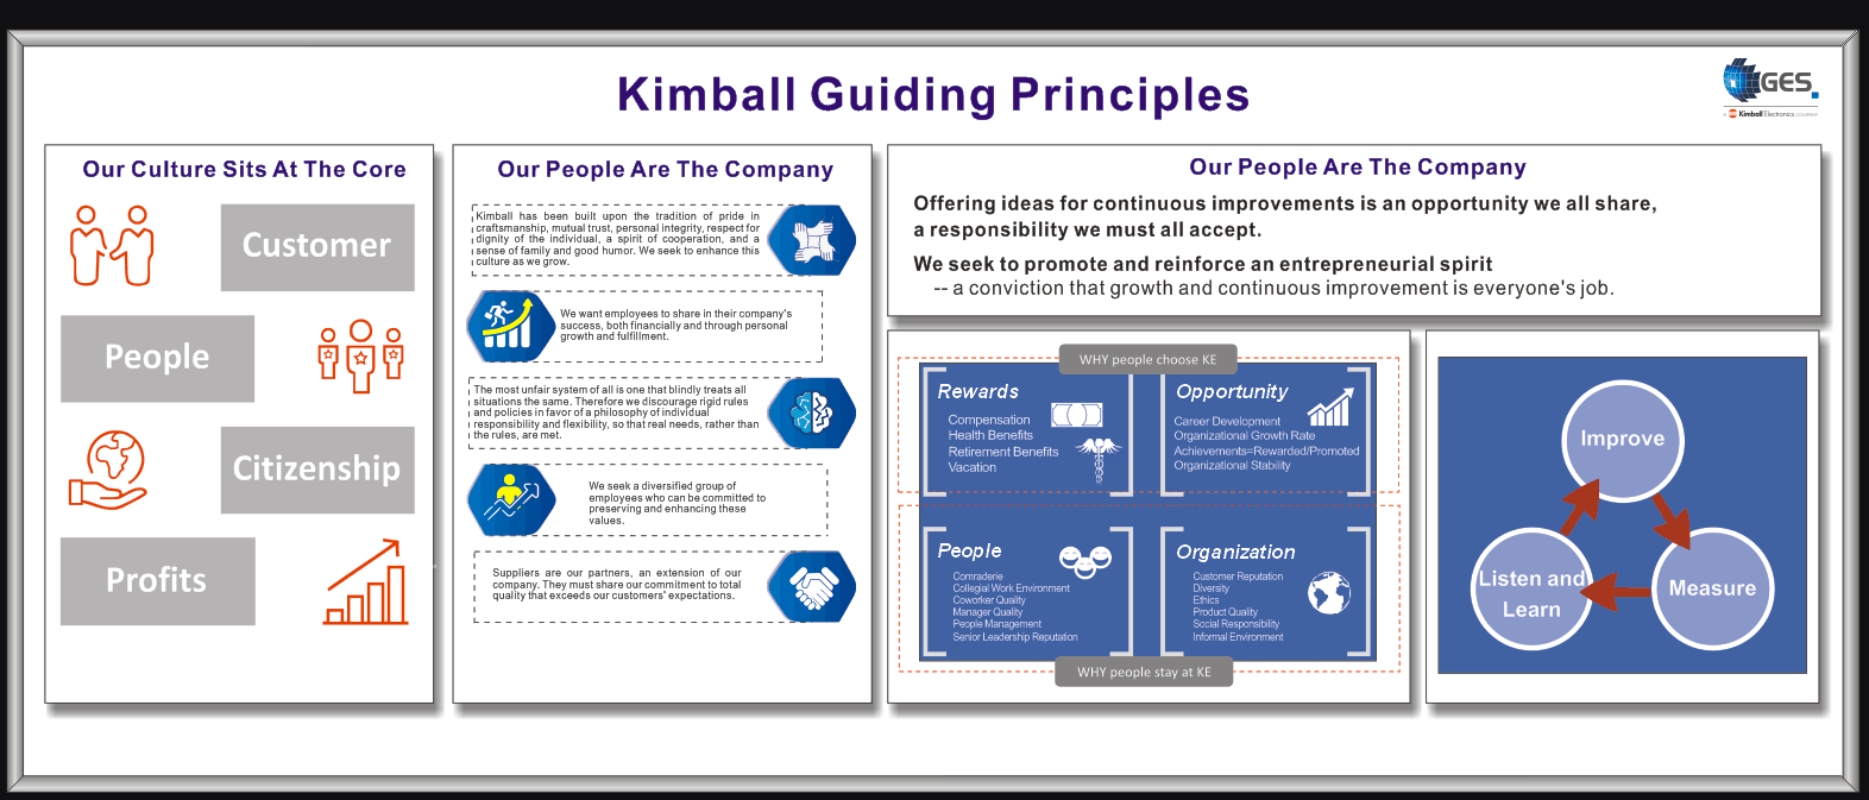 Our Guiding Principles